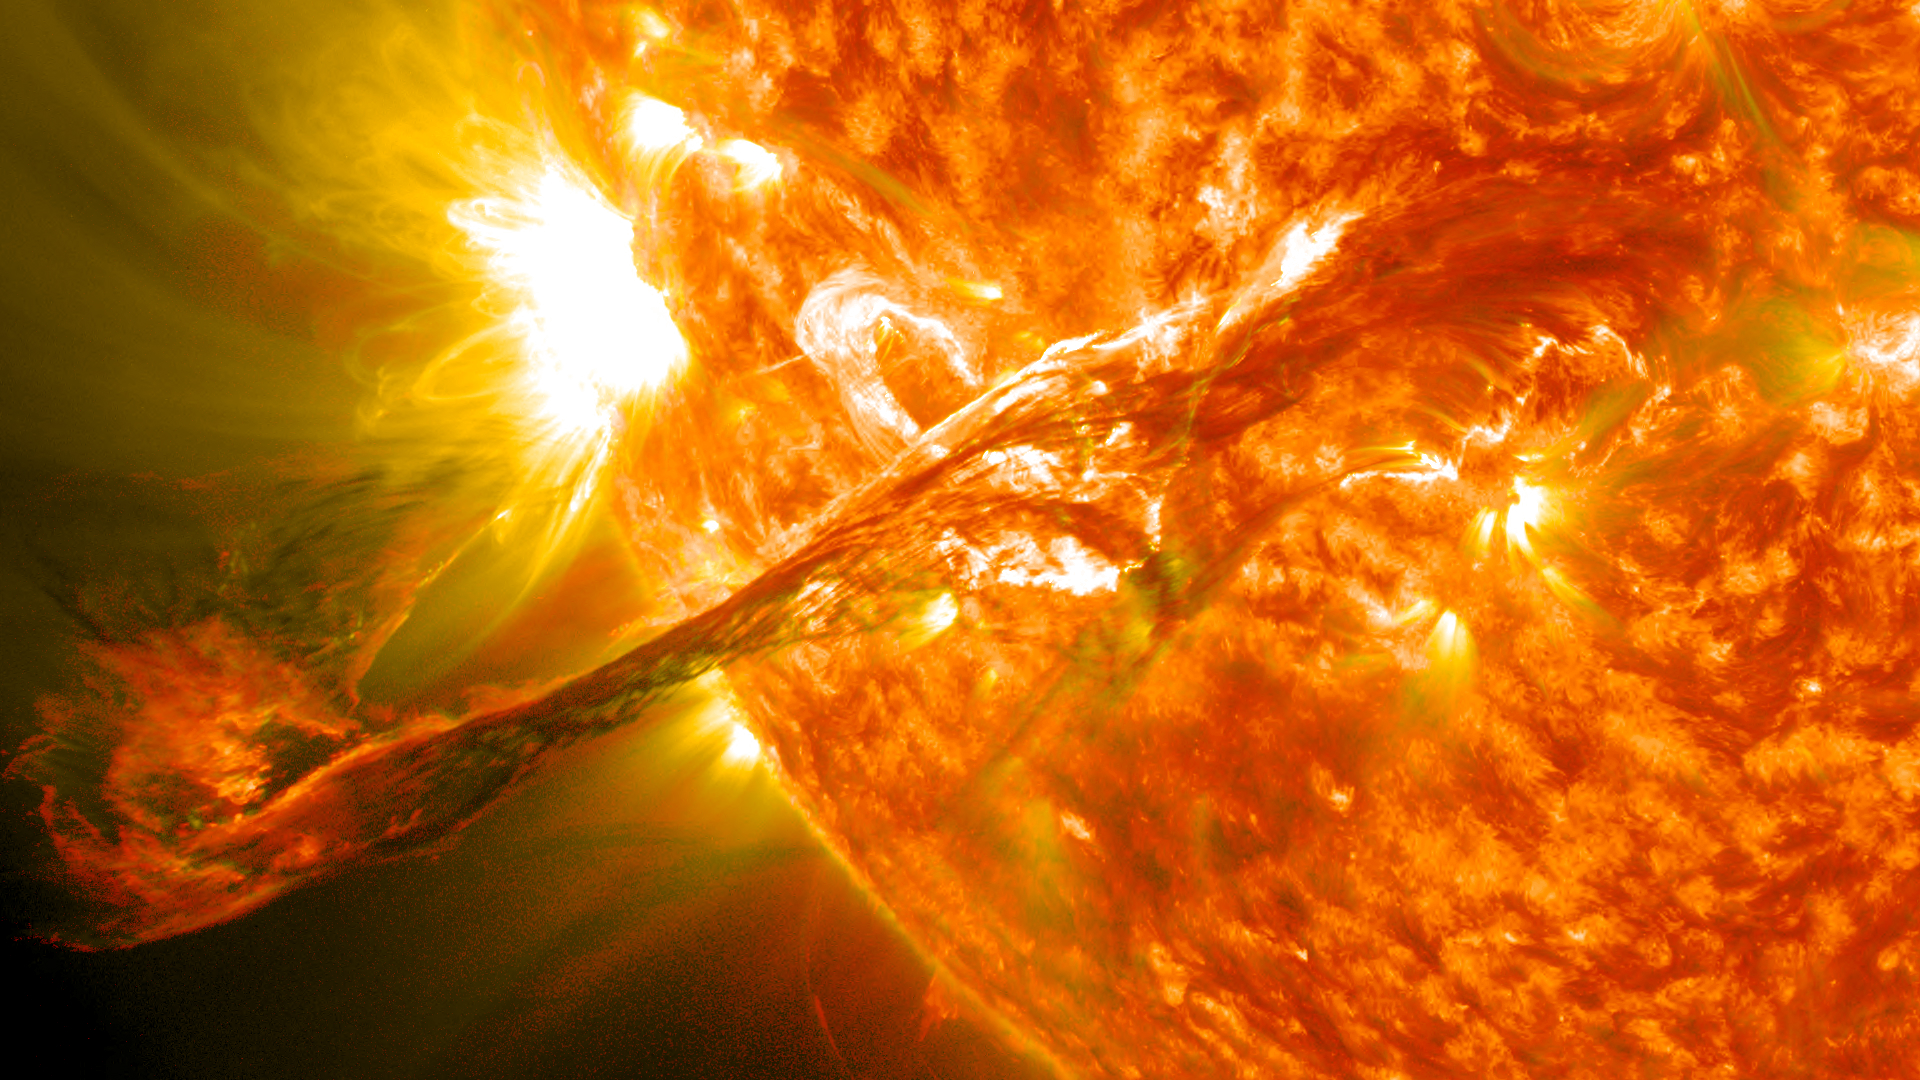 在2012年8月31日爆發的太陽閃焰(日焰)，曾一直徘徊在太陽的大氣層、日冕，有著長長的日珥/絲狀體噴發至太空中。